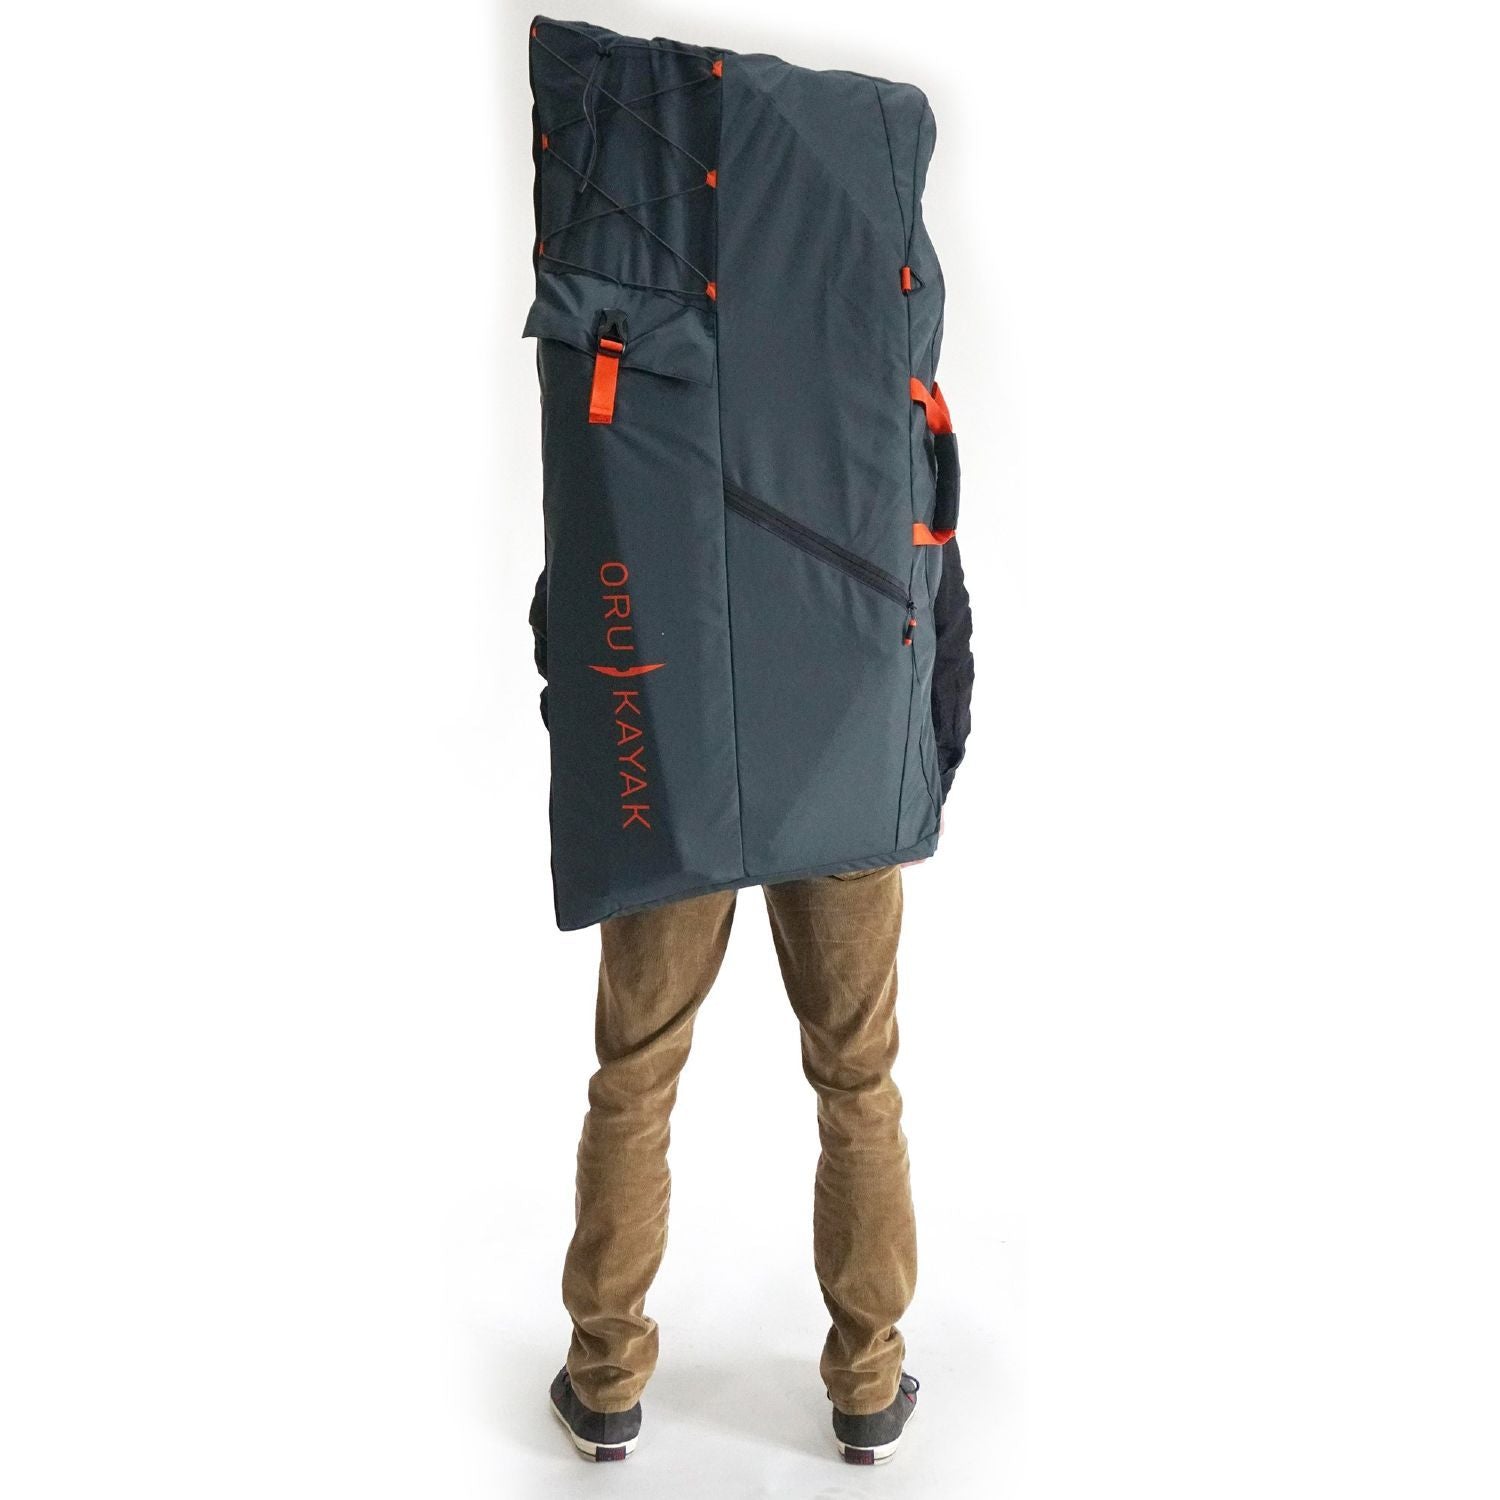 Oru Bag for Inlet and Lake